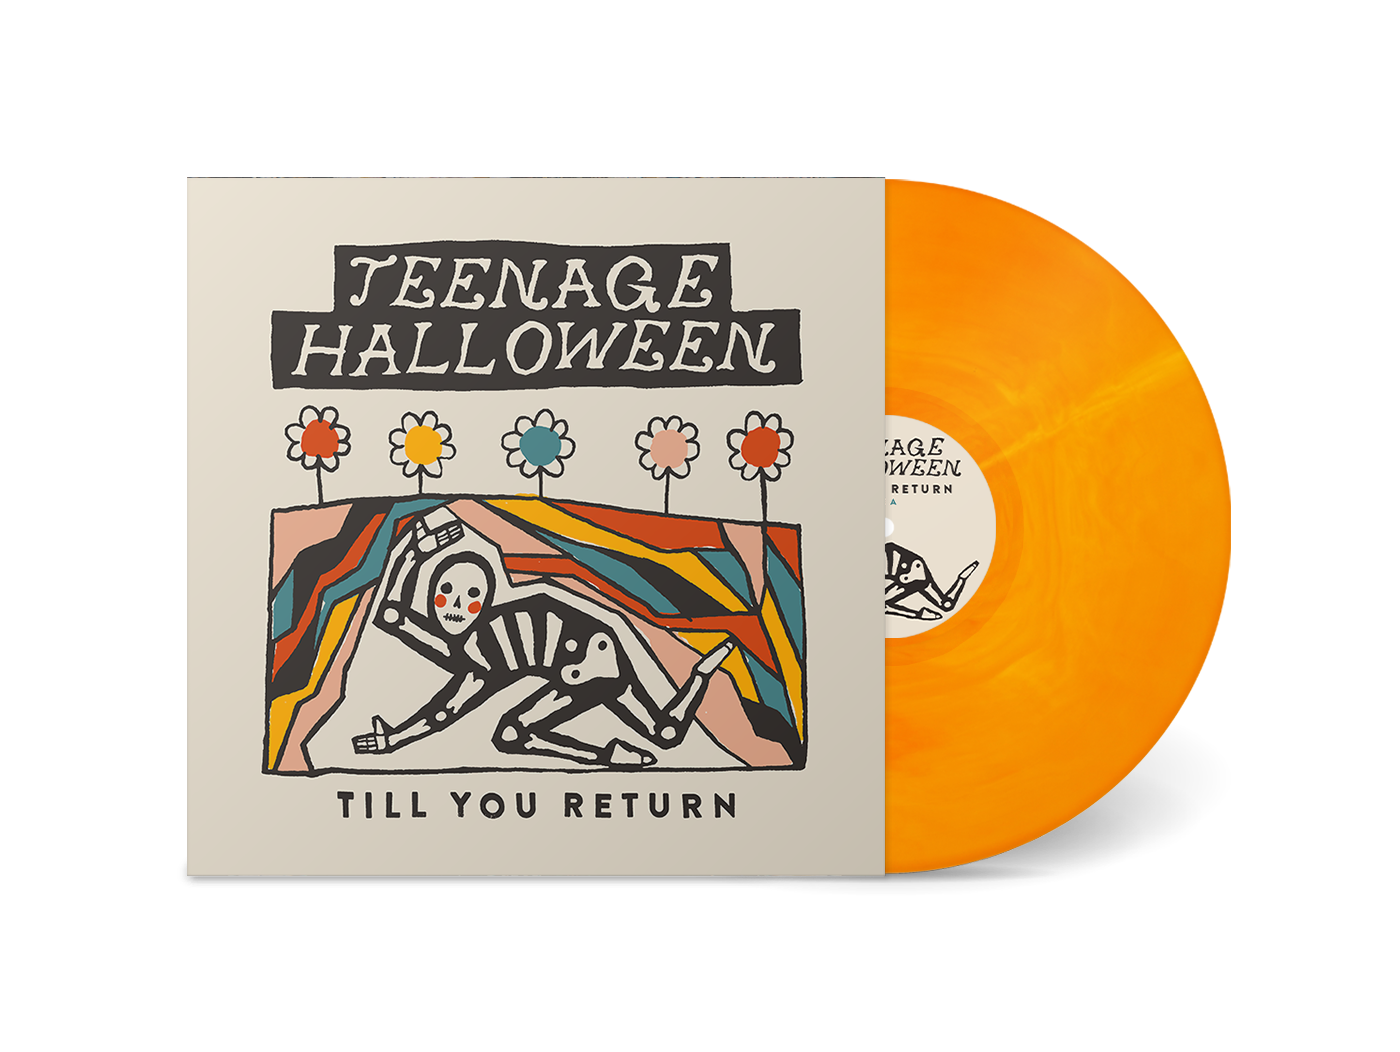 Teenage Halloween "Till You Return" 12"